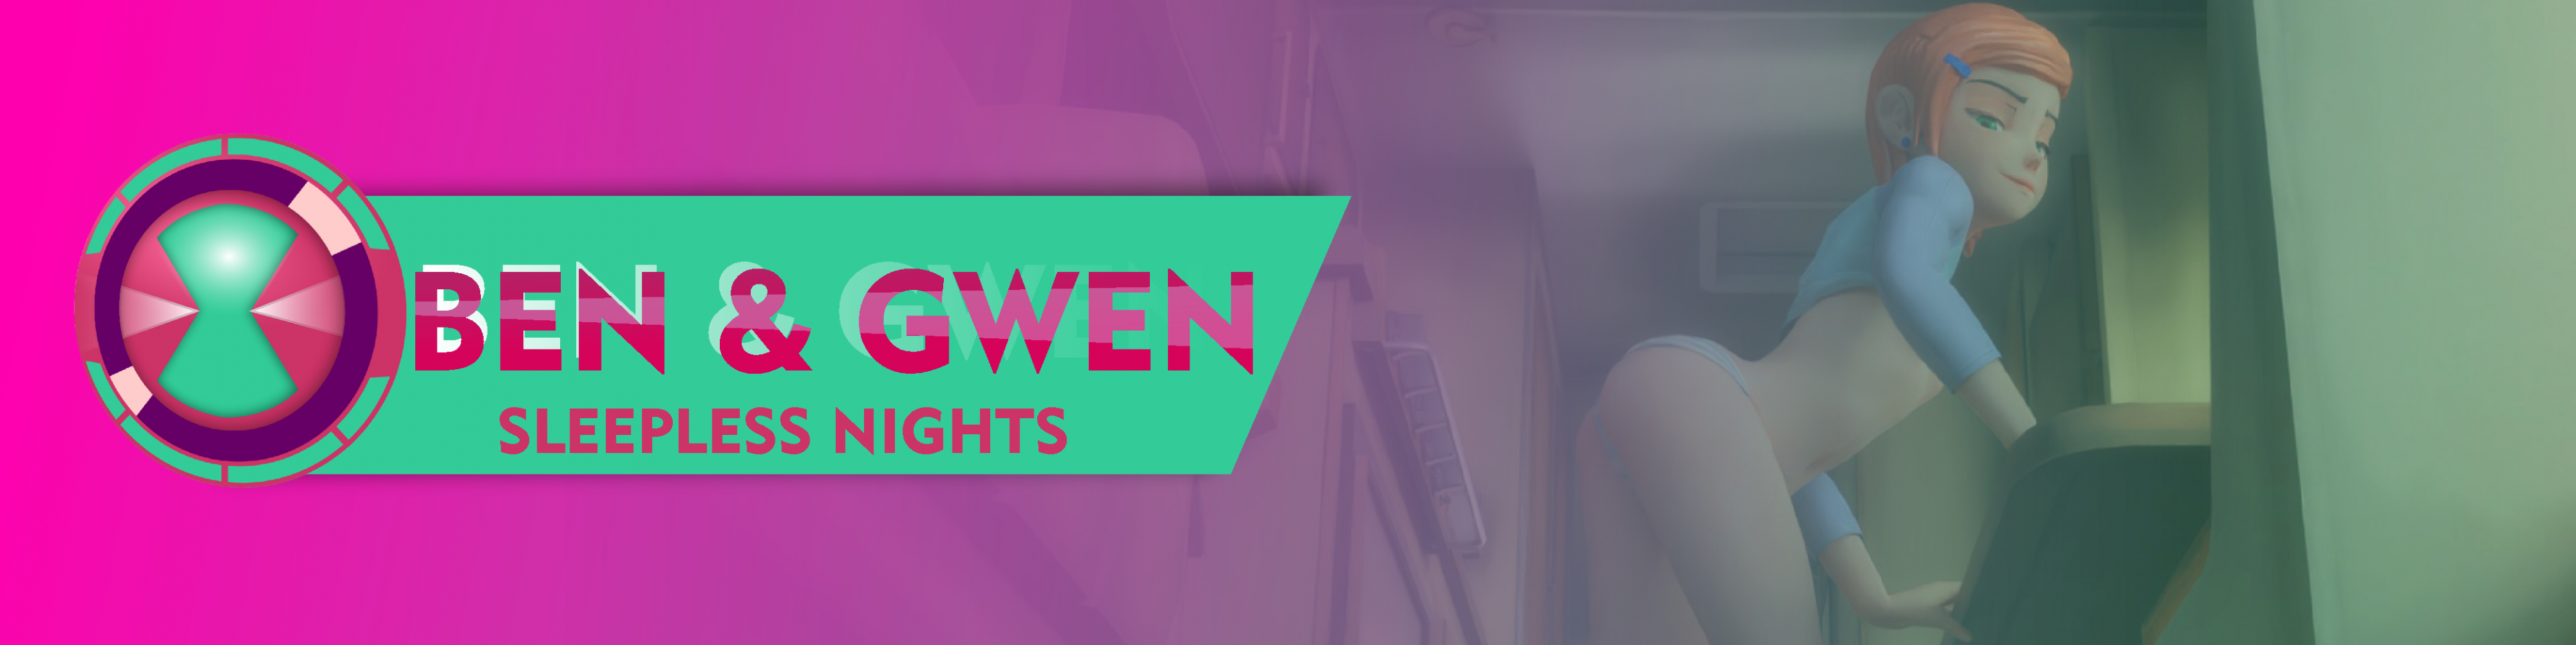 Ben & Gwen Sleepless Nights v0.02 - free game download, reviews, mega -  xGames